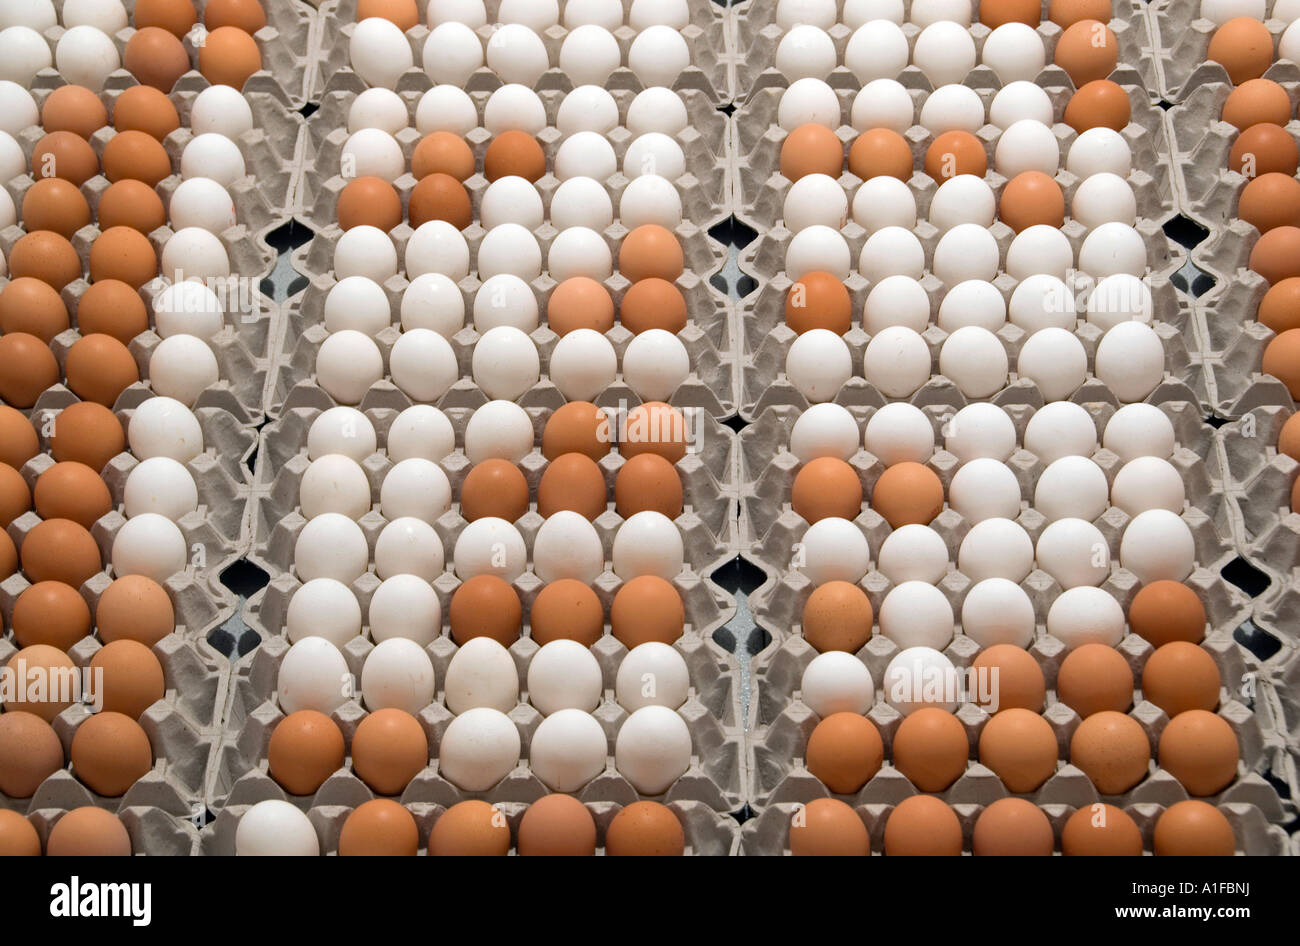 Pila de huevos de gallina en bandejas Foto de stock